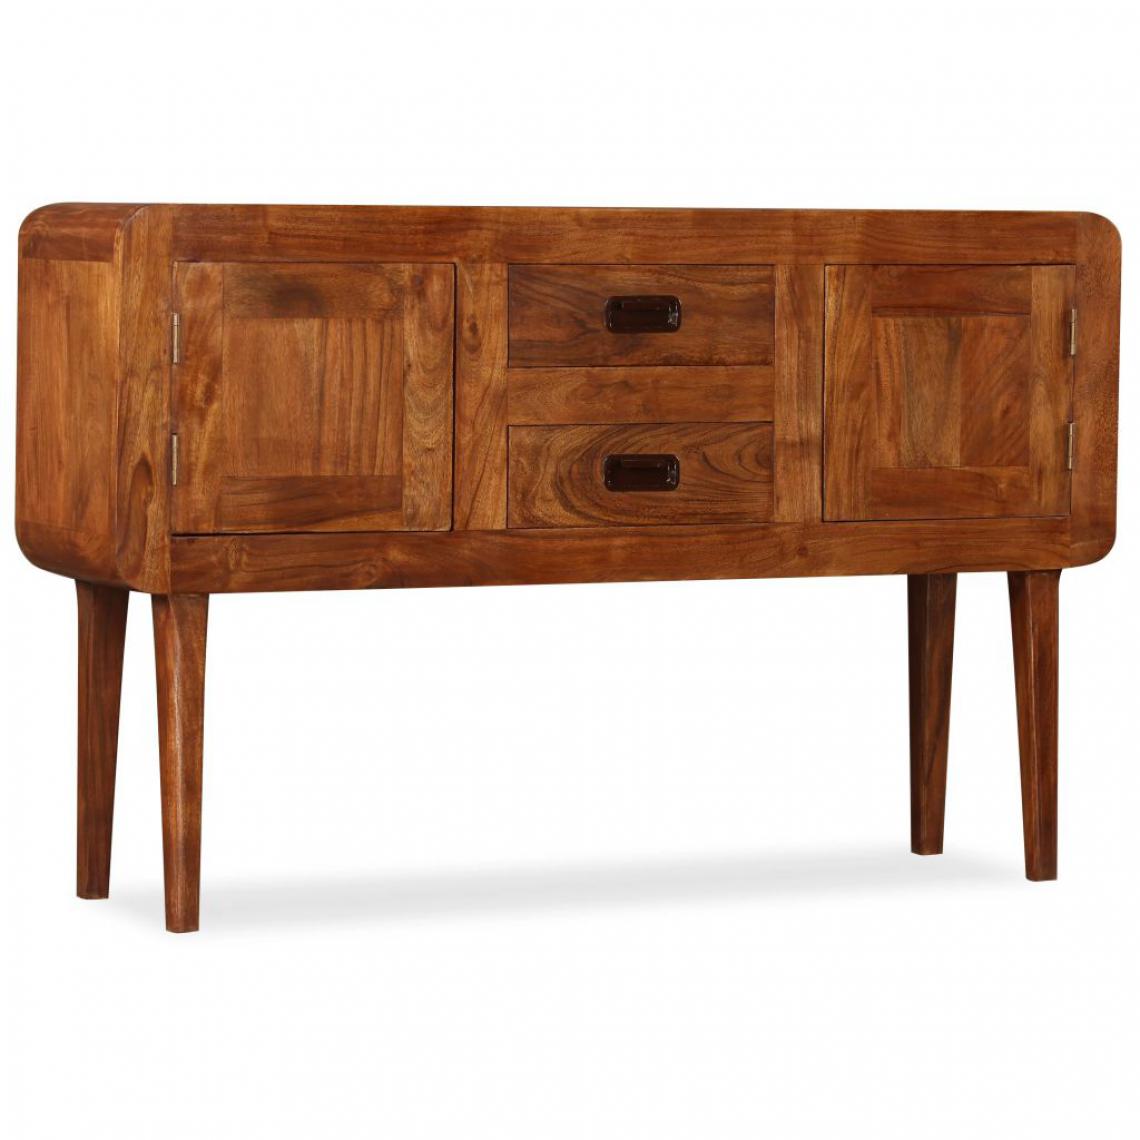 Helloshop26 - Buffet bahut armoire console meuble de rangement bois massif avec finition en bois de sesham 120 cm 4402022 - Consoles